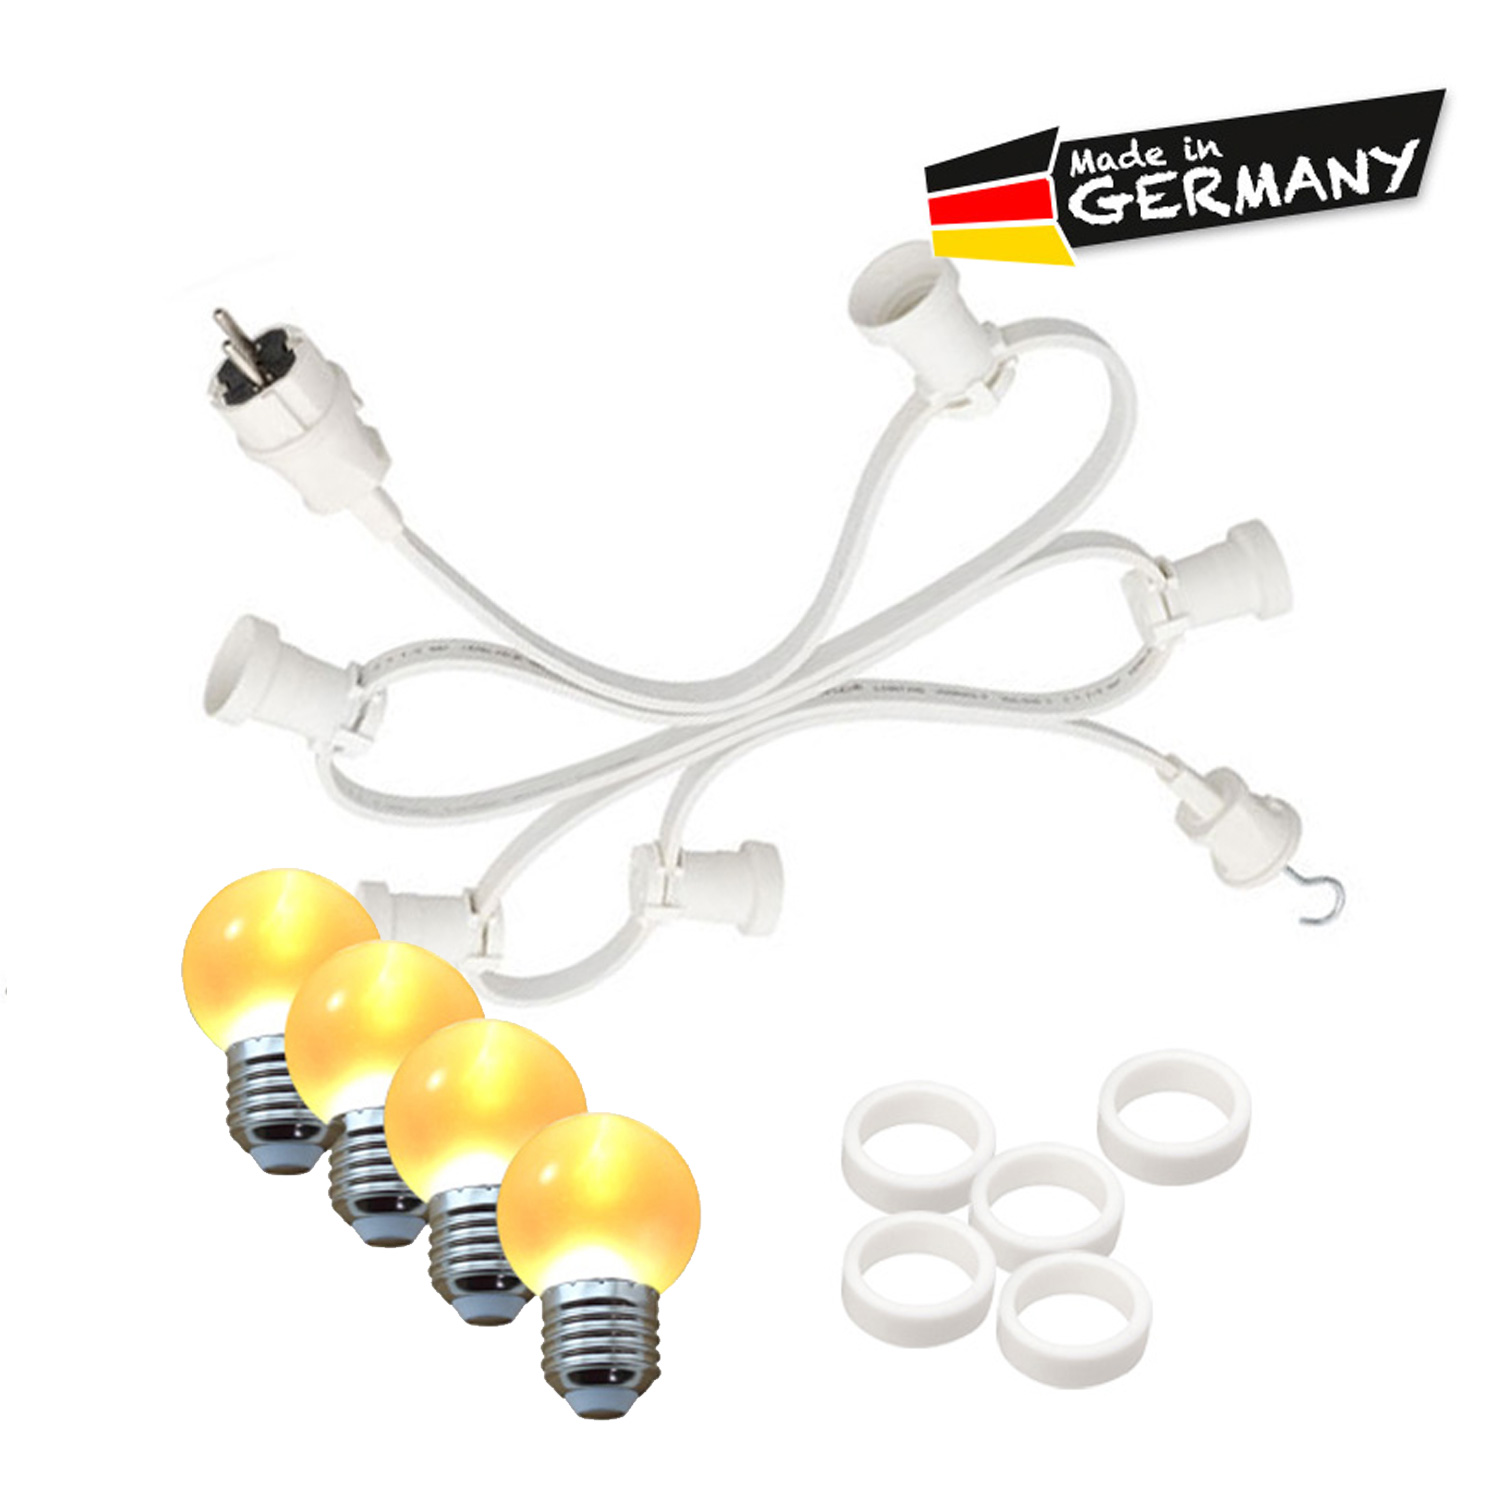 Illu-/Partylichterkette 30m - Außenlichterkette - Made in Germany - 50 x ultra-warmweiße LED Kugeln